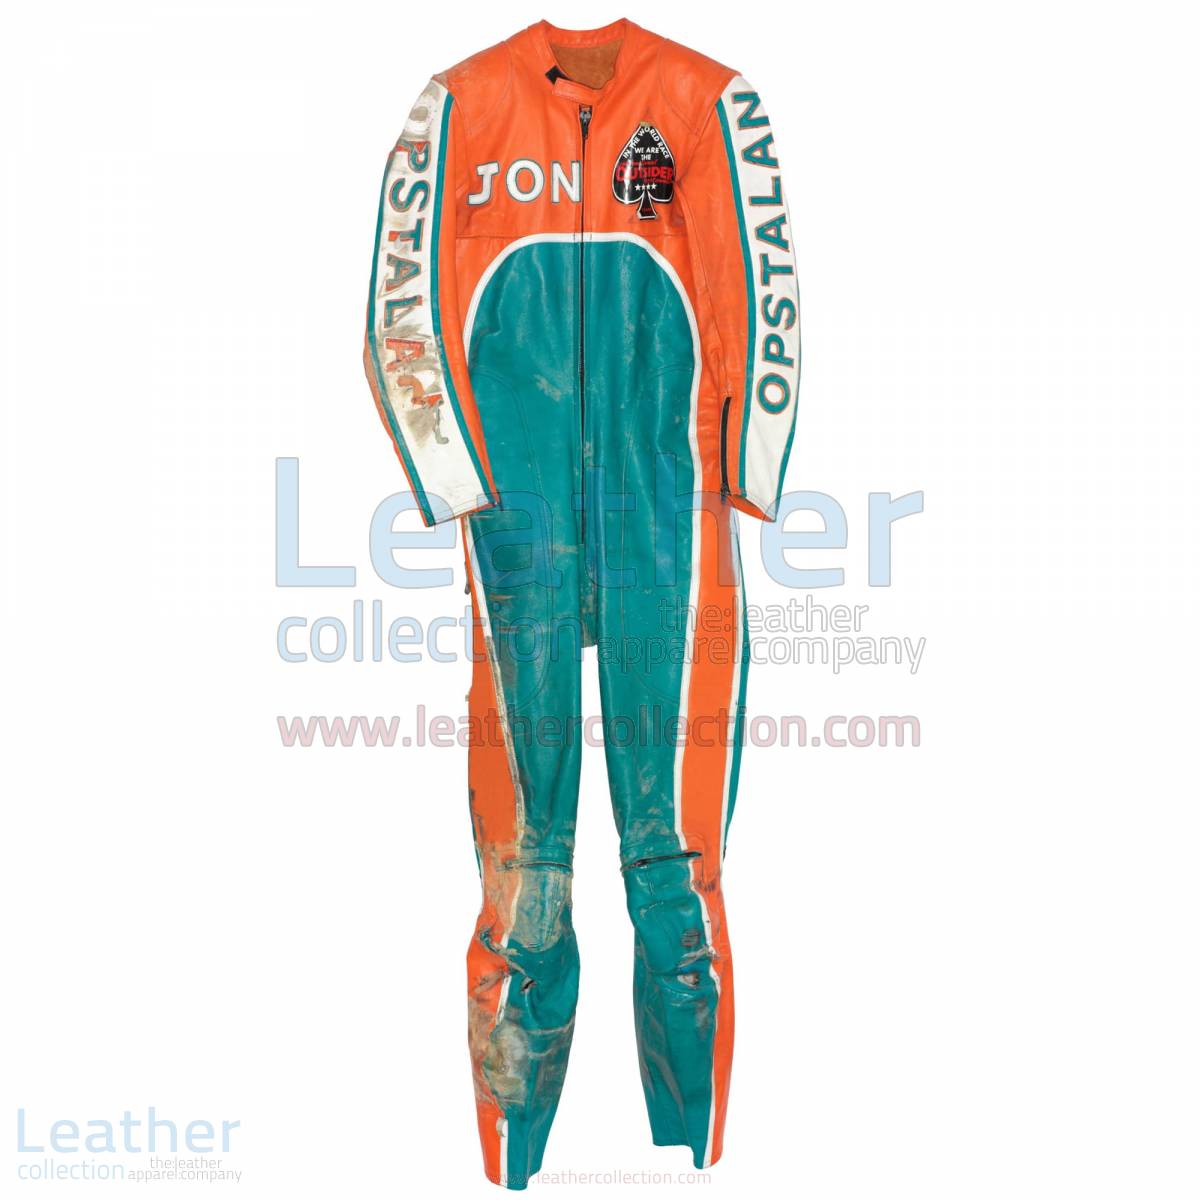 Jon Ekerold Yamaha GP 1980 Leathers – Yamaha Suit